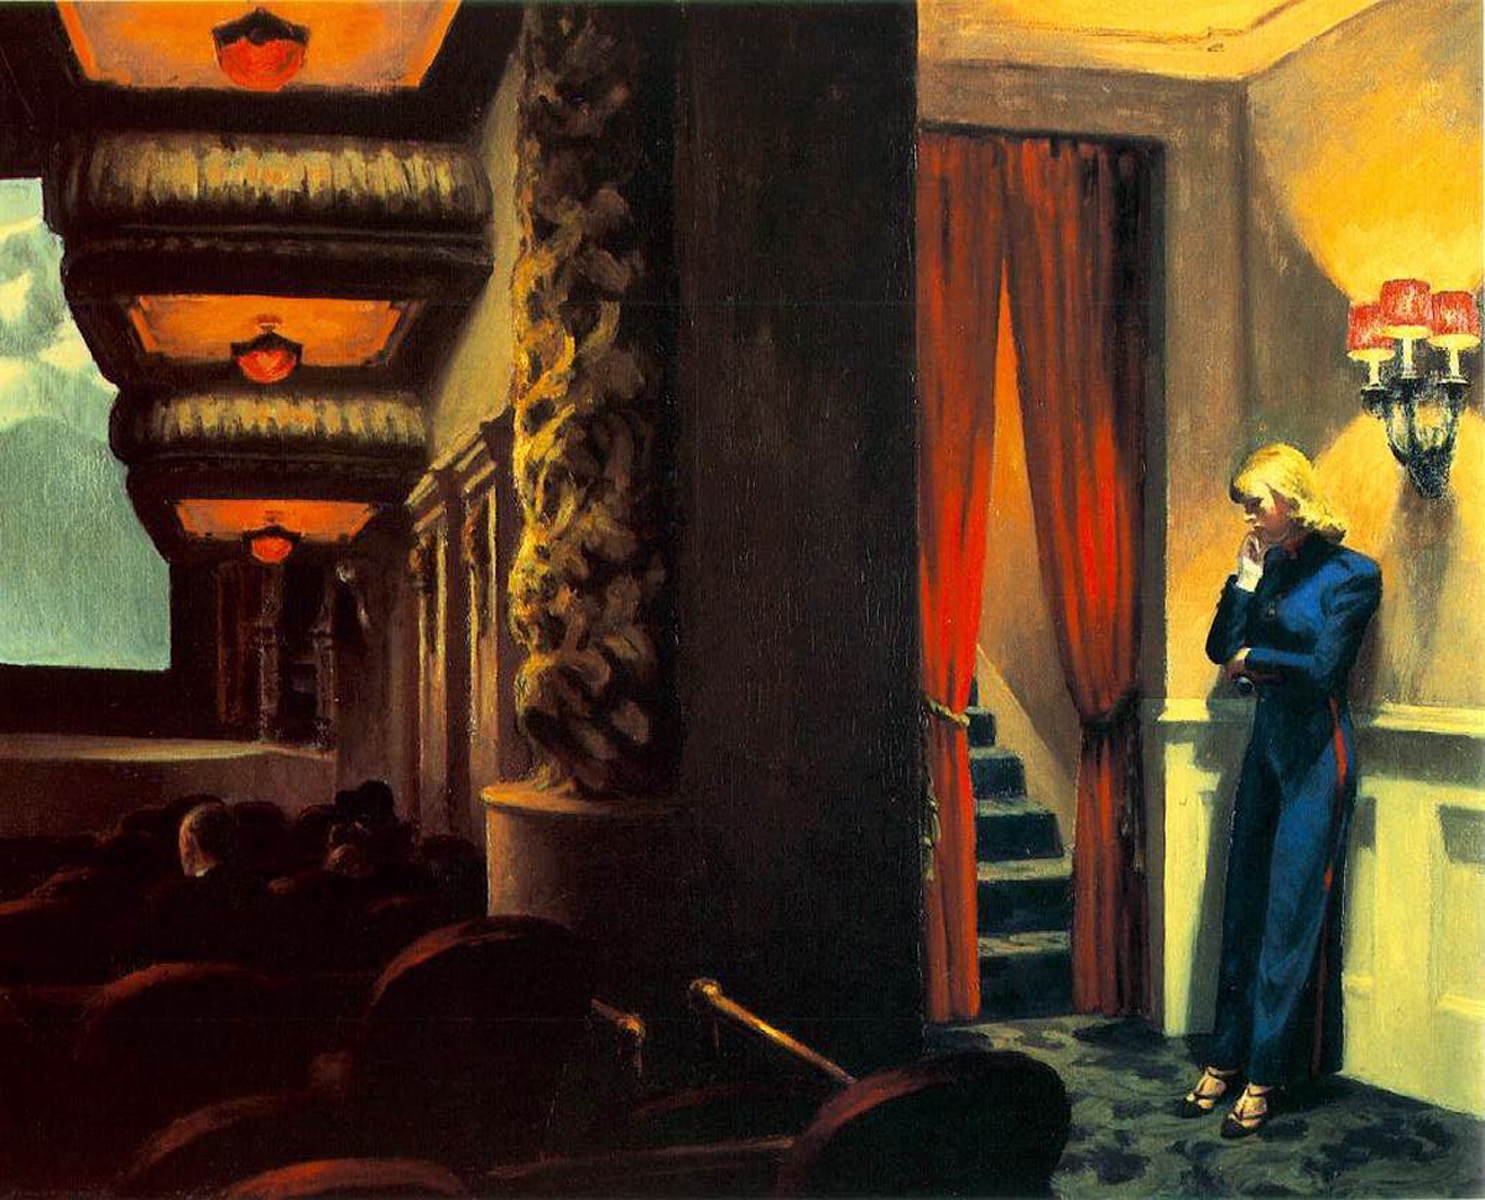 Filme em Nova Iorque by Edward Hopper - 1939 Museum of Modern Art